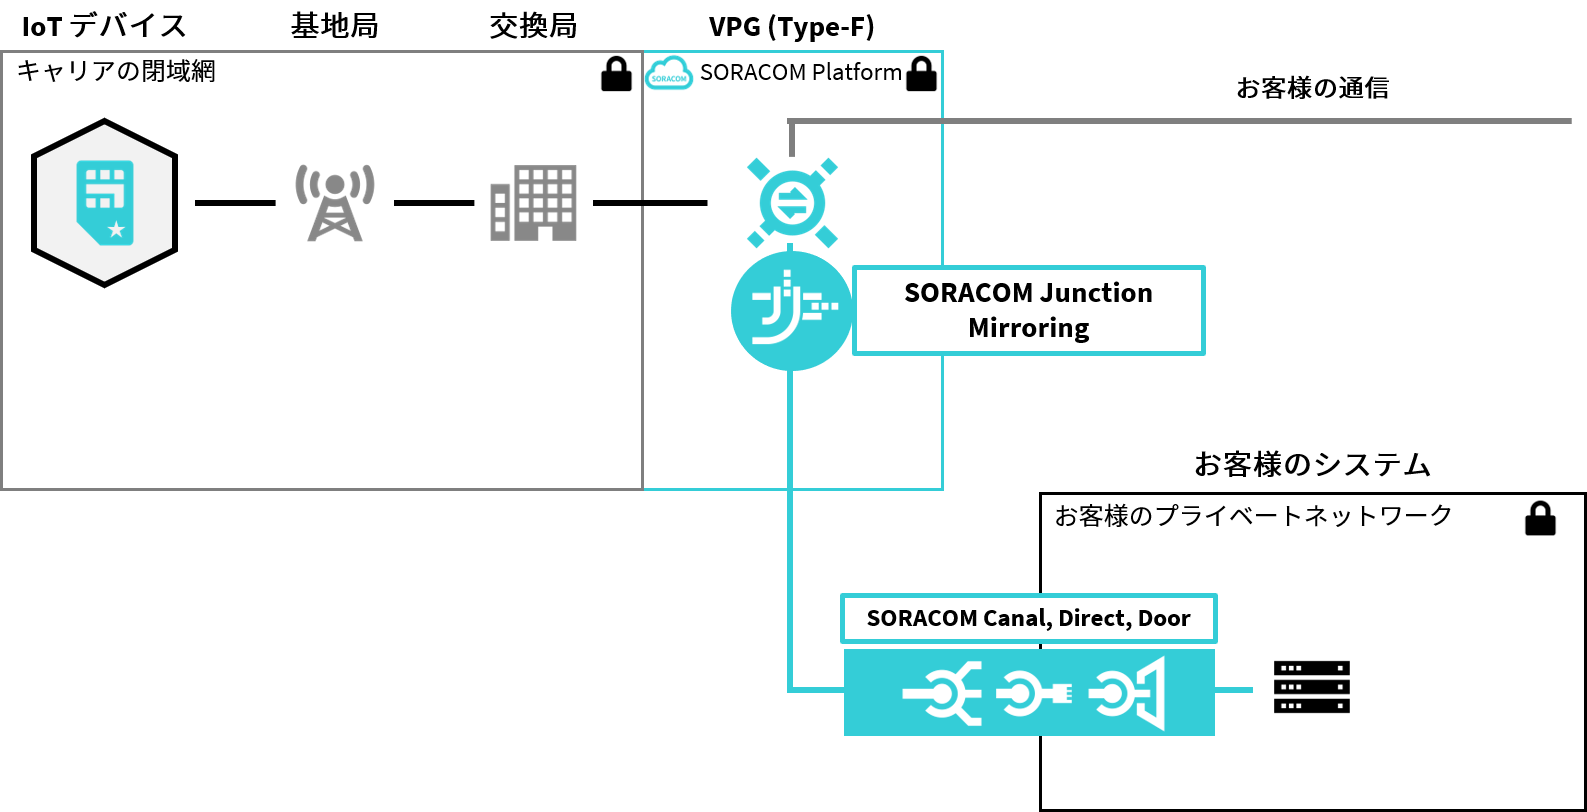 SORACOM Junction Mirroring